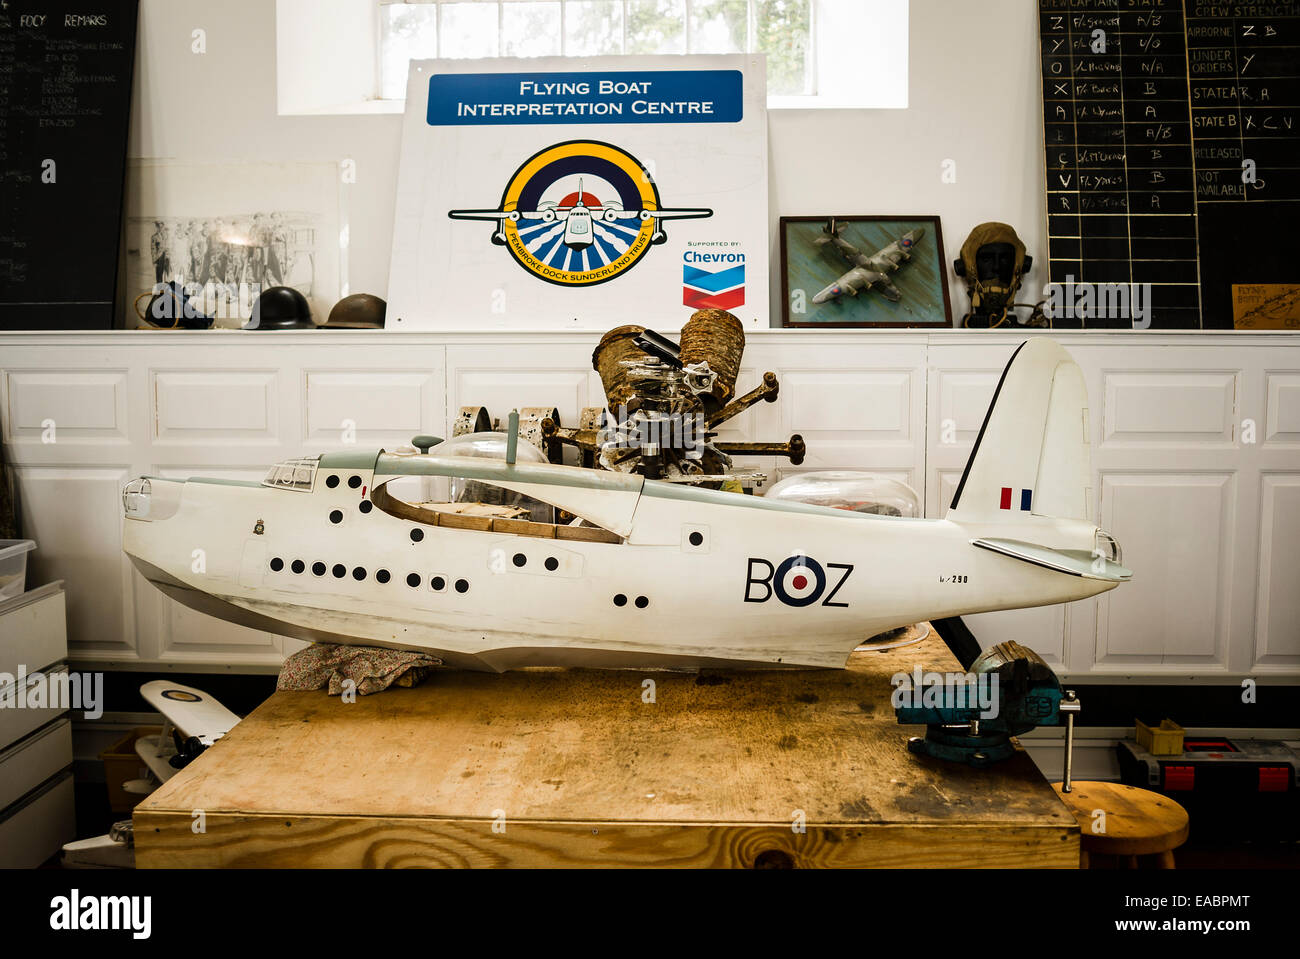 Exhibits in the Sunderland Flying Boat Interpretation Centre in Pembroke Dock UK Stock Photo